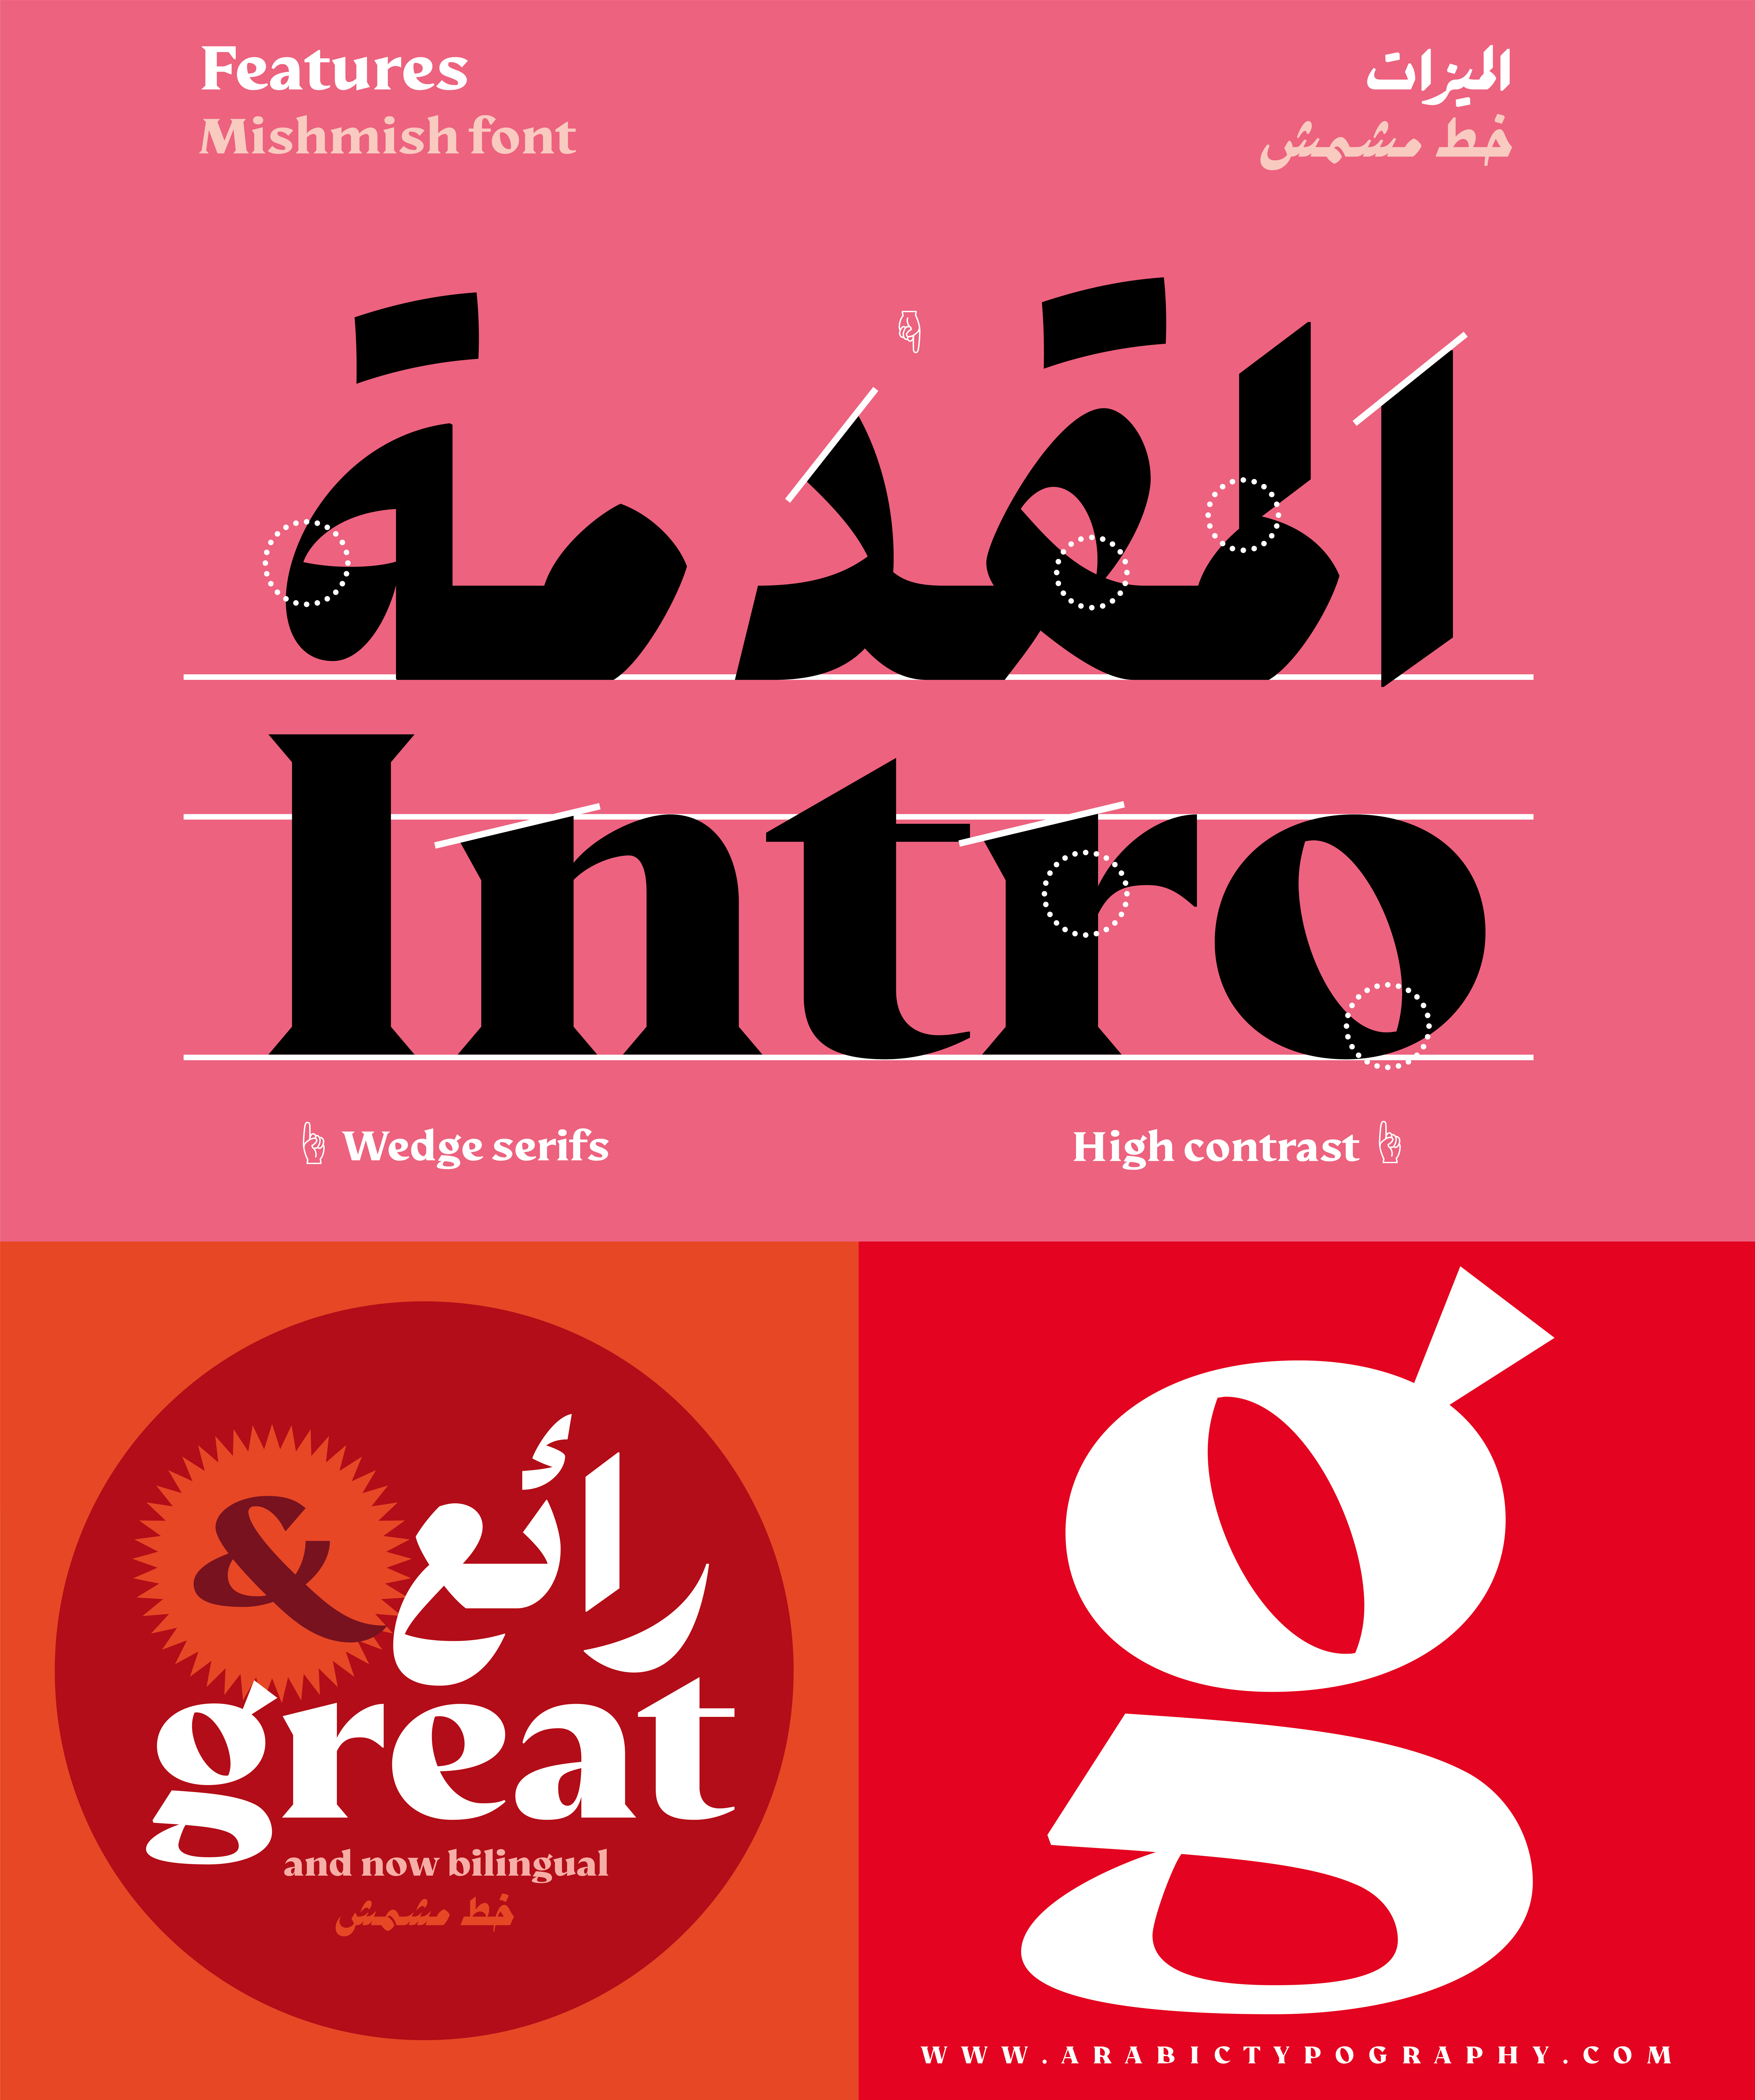 typographic experiments